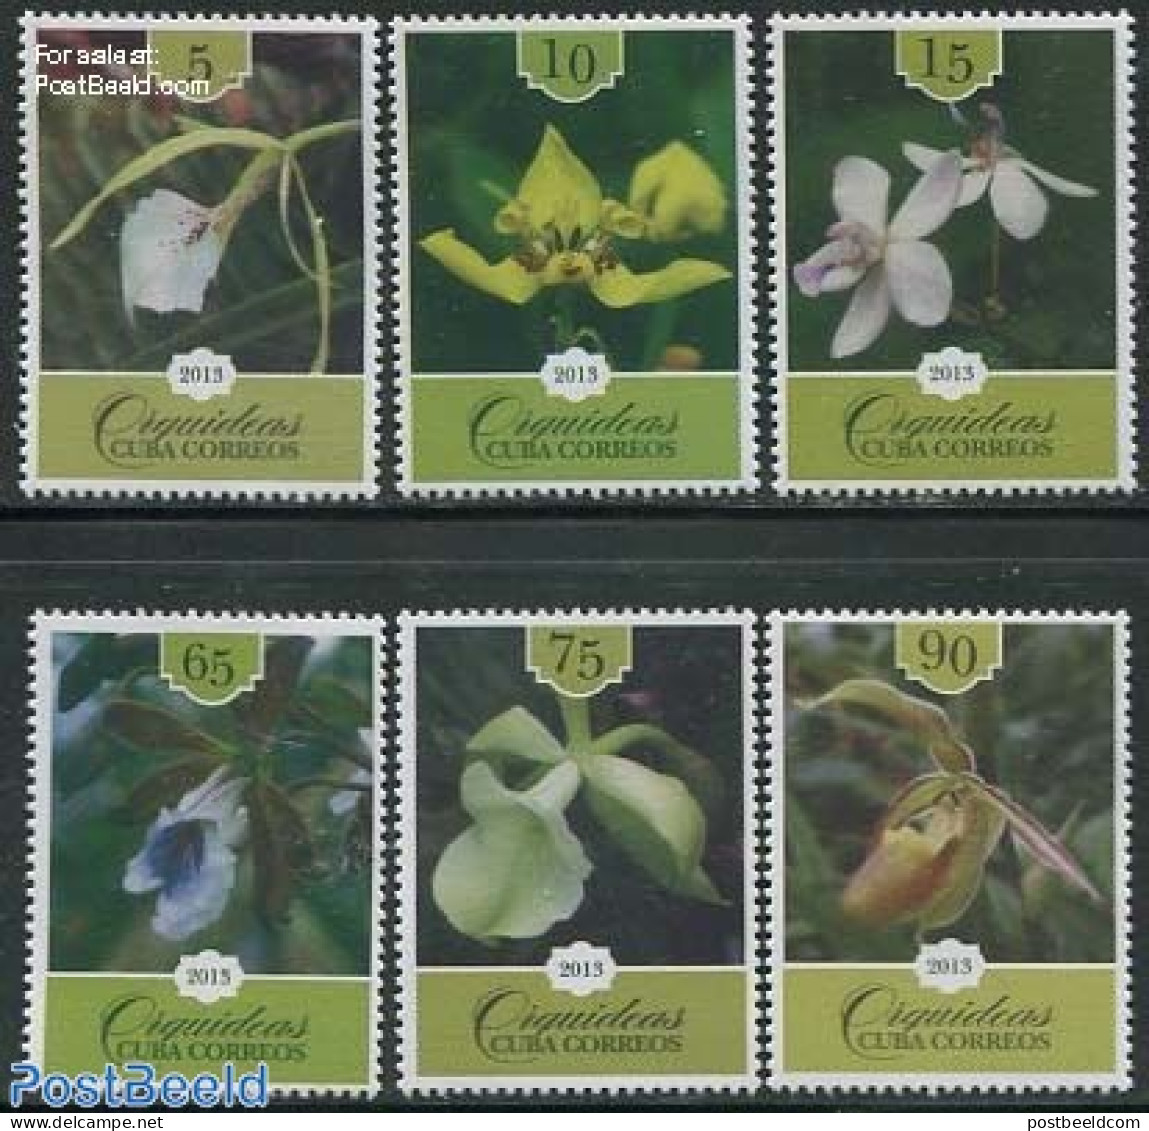 Cuba 2013 Orchids 6v, Mint NH, Nature - Flowers & Plants - Orchids - Neufs